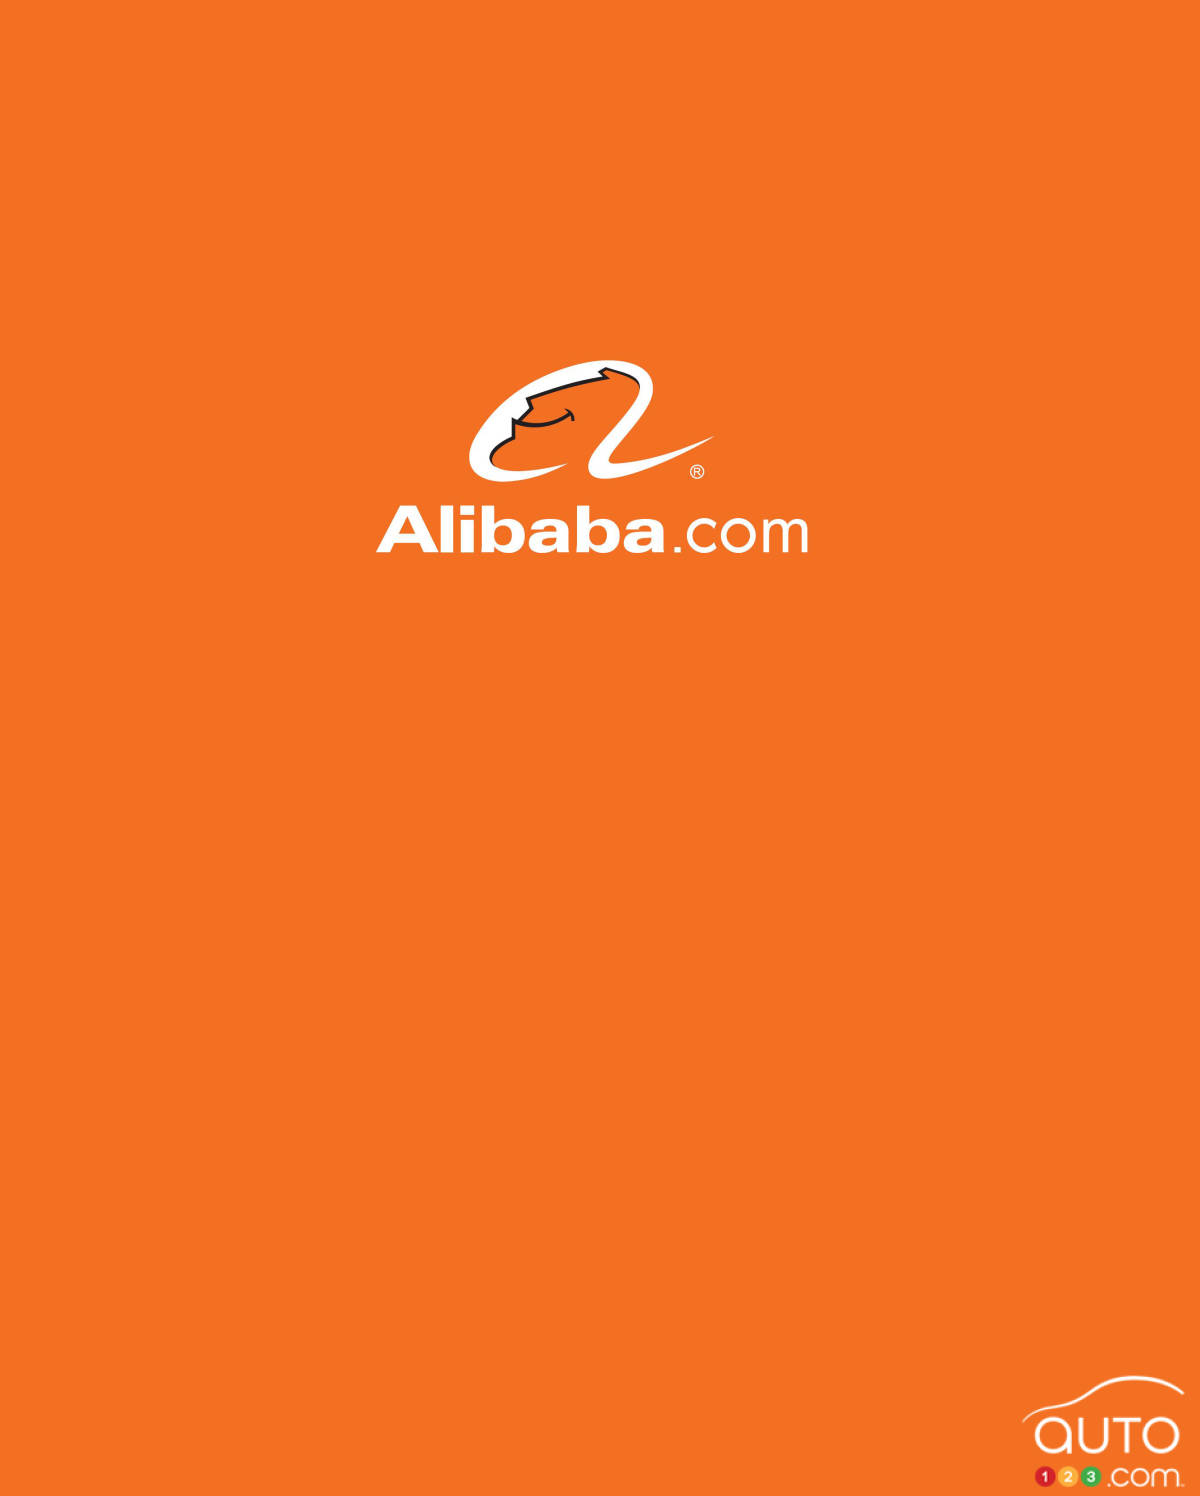 Le géant Alibaba veut lancer une voiture connectée d’ici 2016